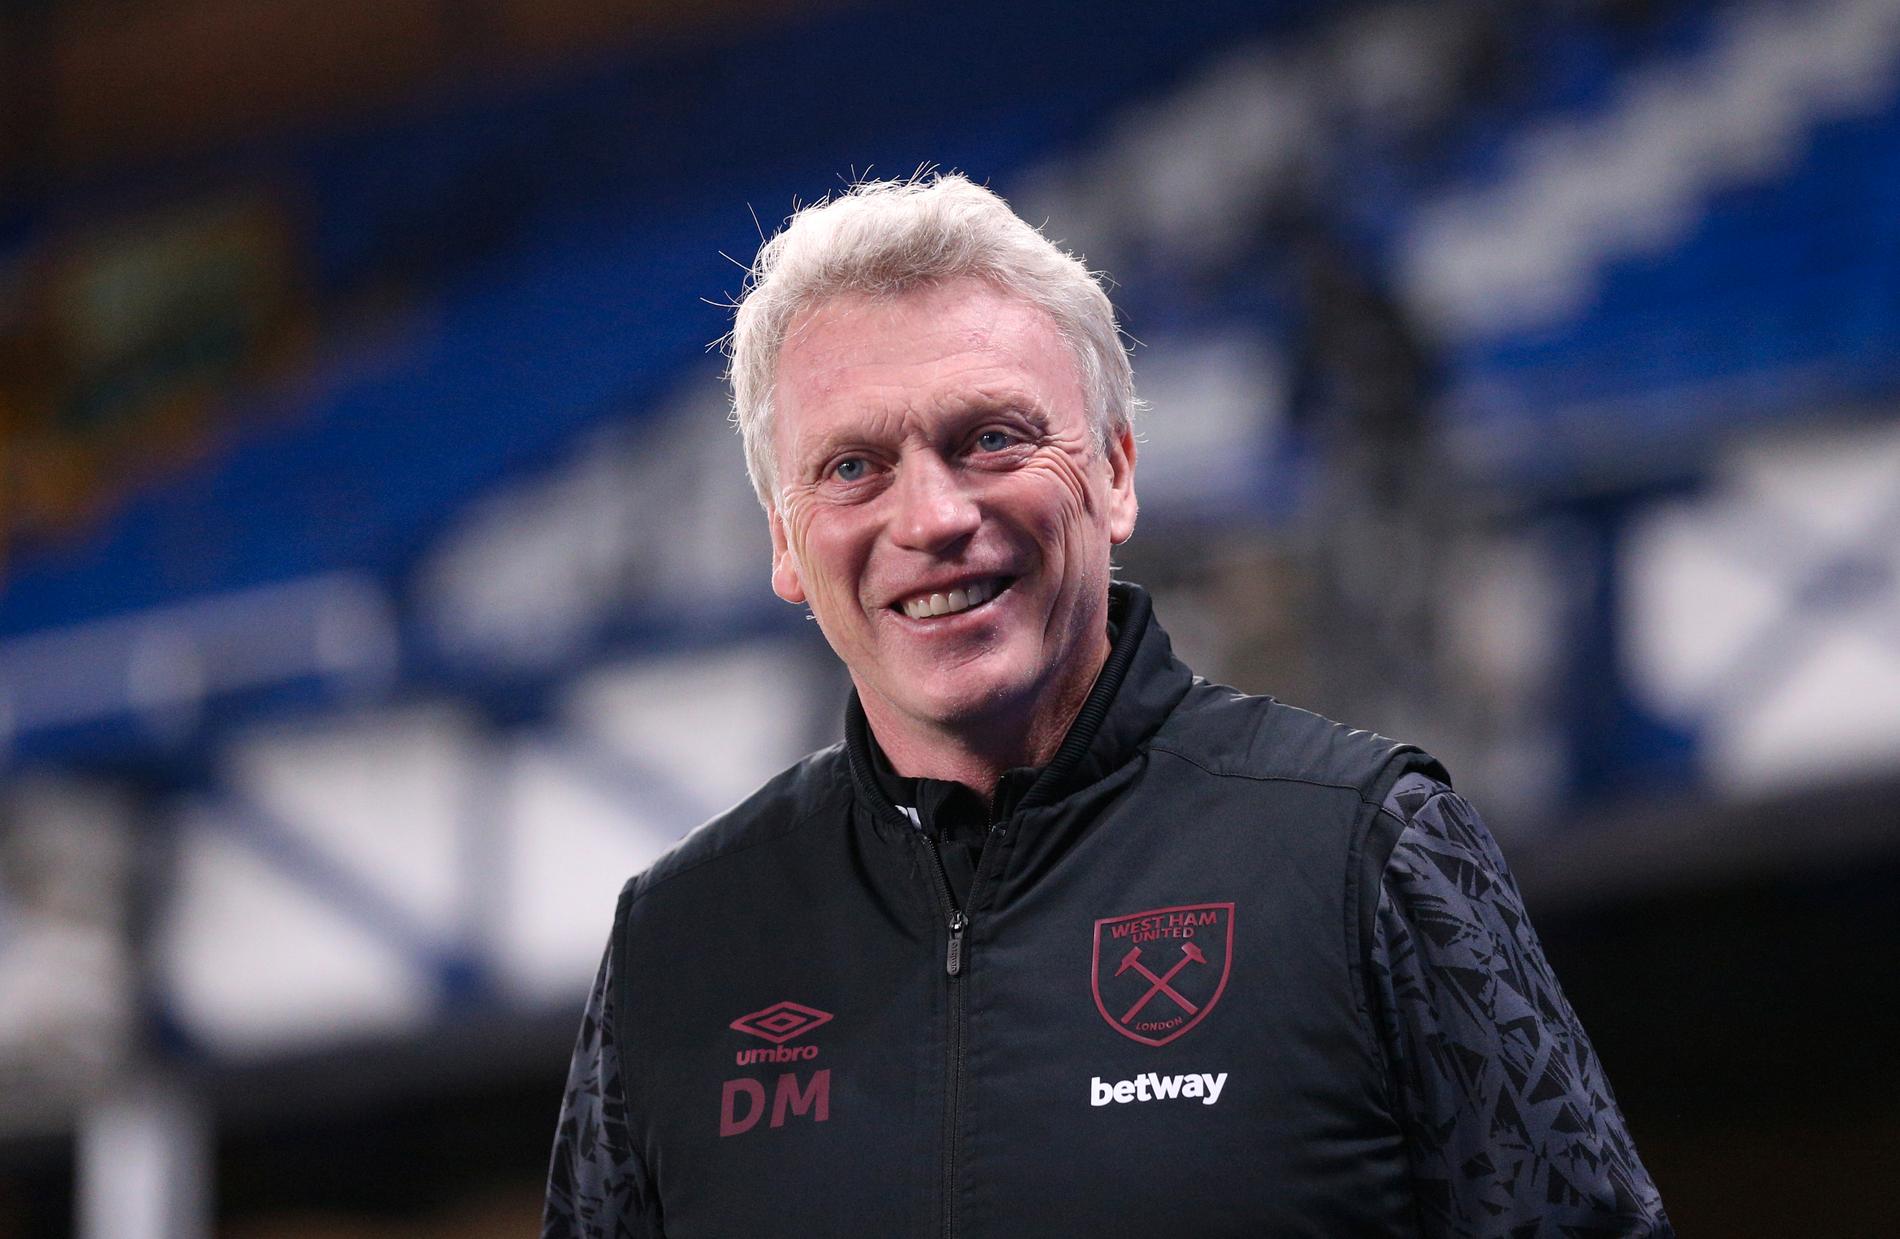 West Hams manager David Moyes kunde le efter en 1–0-seger borta mot hans tidigare lag Everton i Premier League.